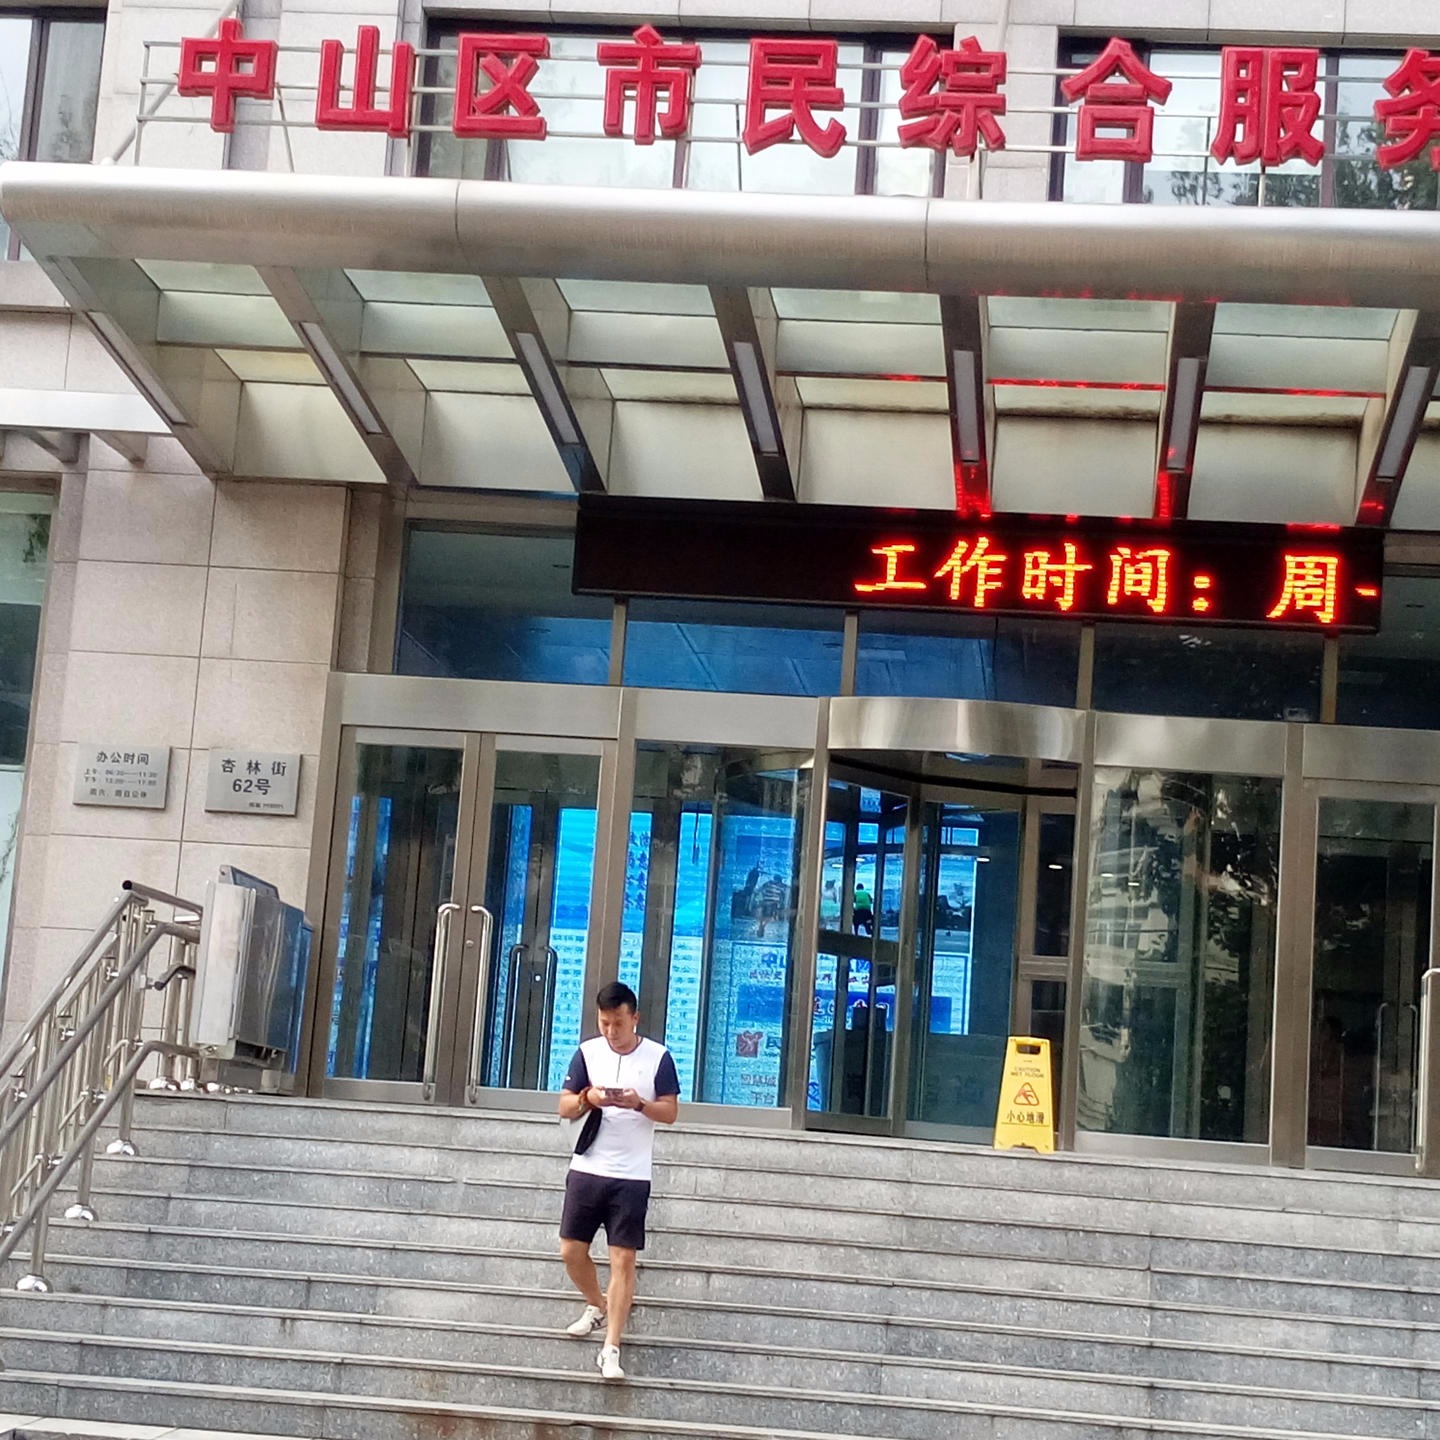 盖州市 老年中心斜挂式升降平台 启运北京智能无障碍平台价格 求购楼梯电梯安装图片